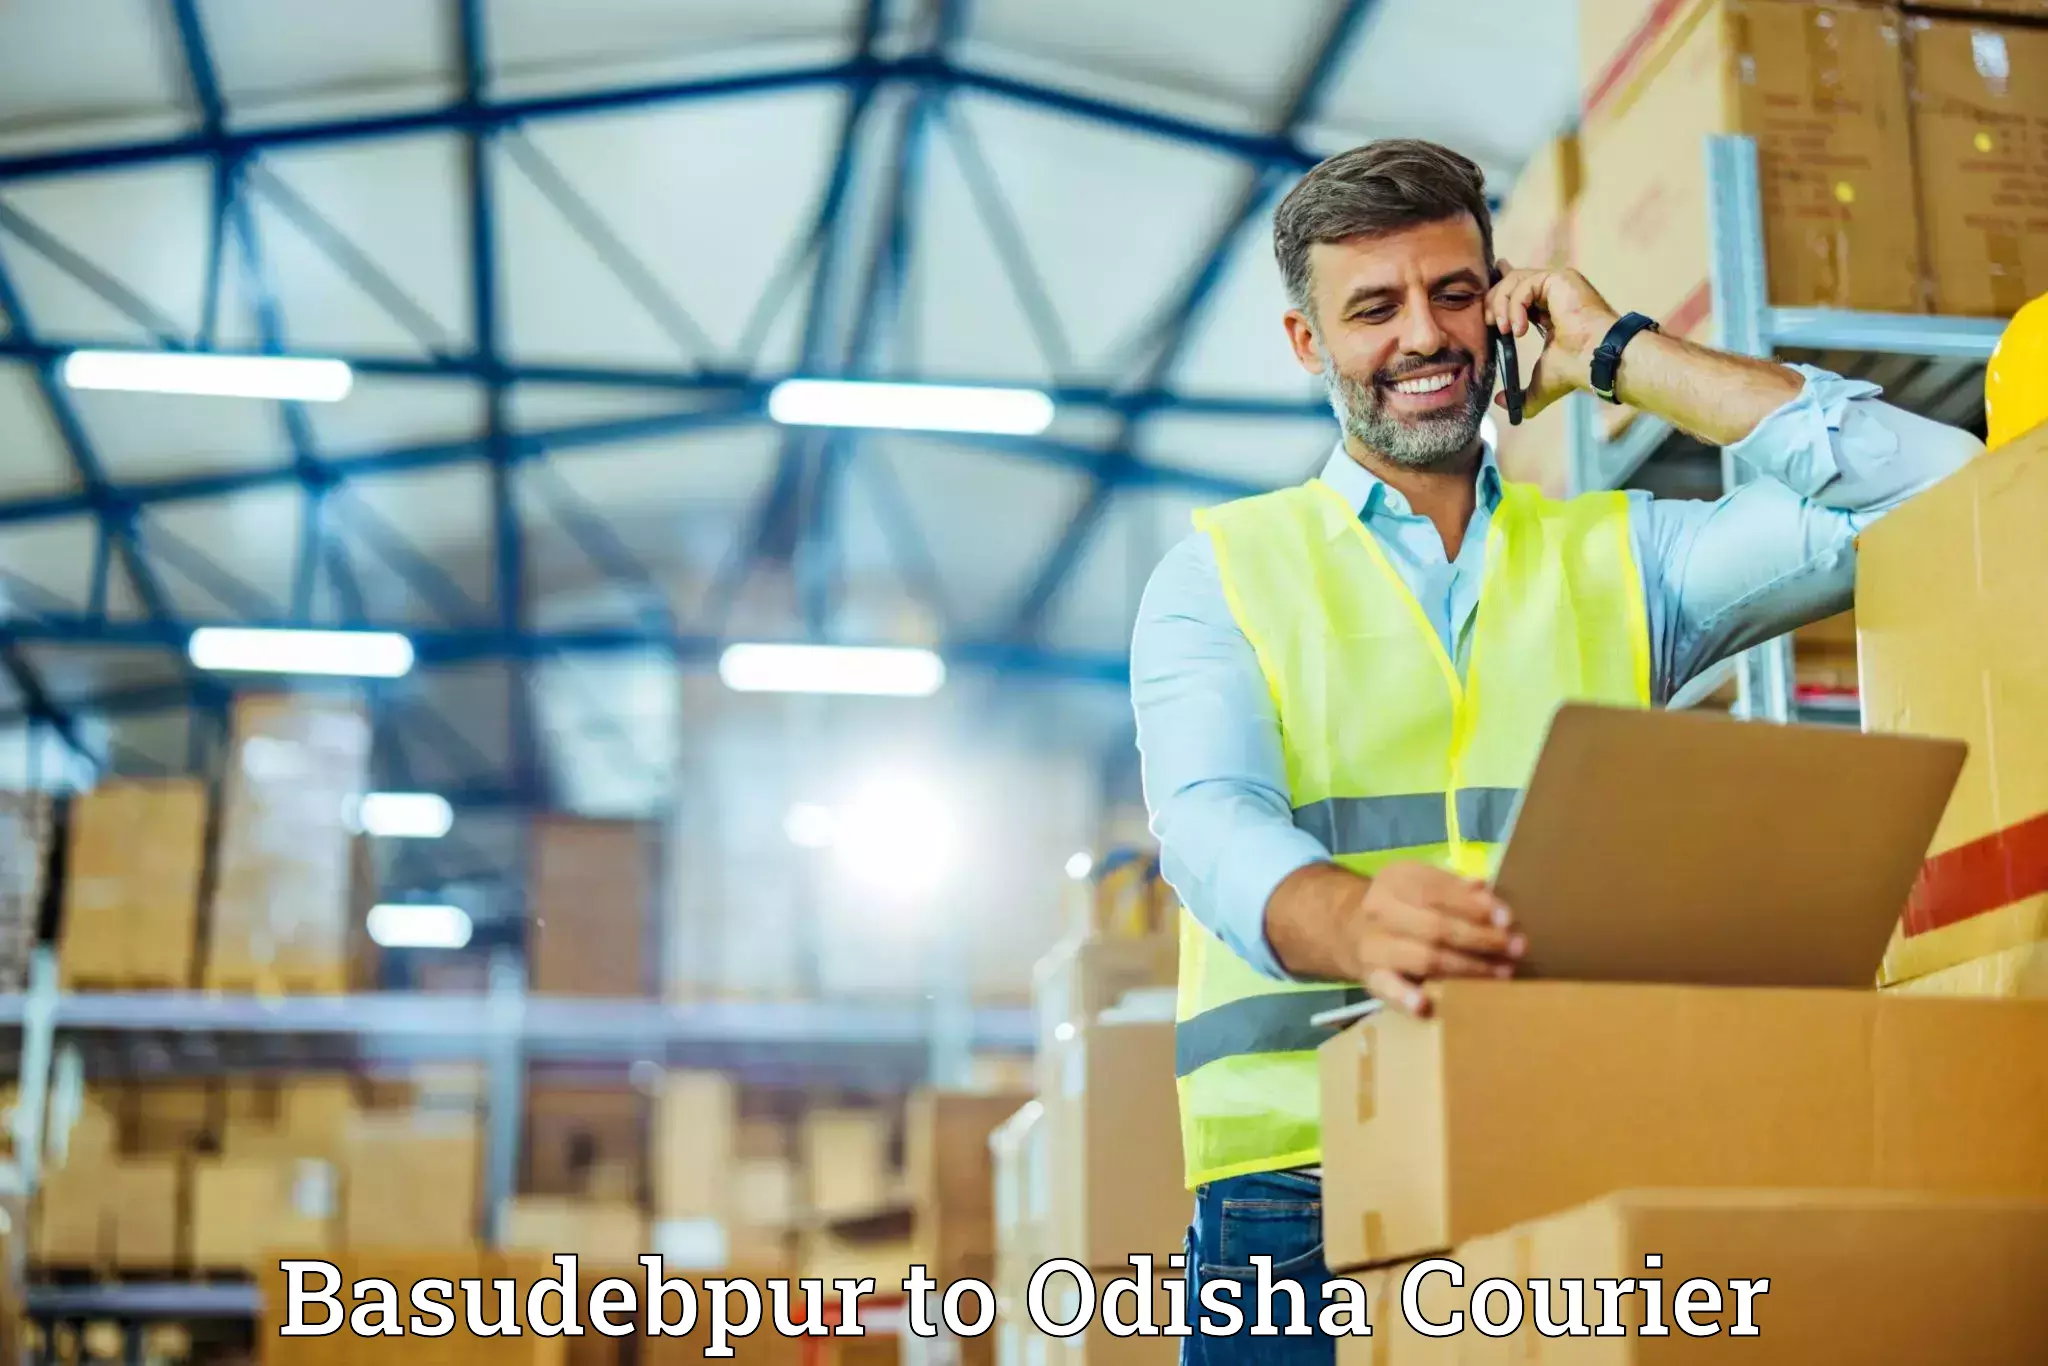 Comprehensive goods transport Basudebpur to Odisha